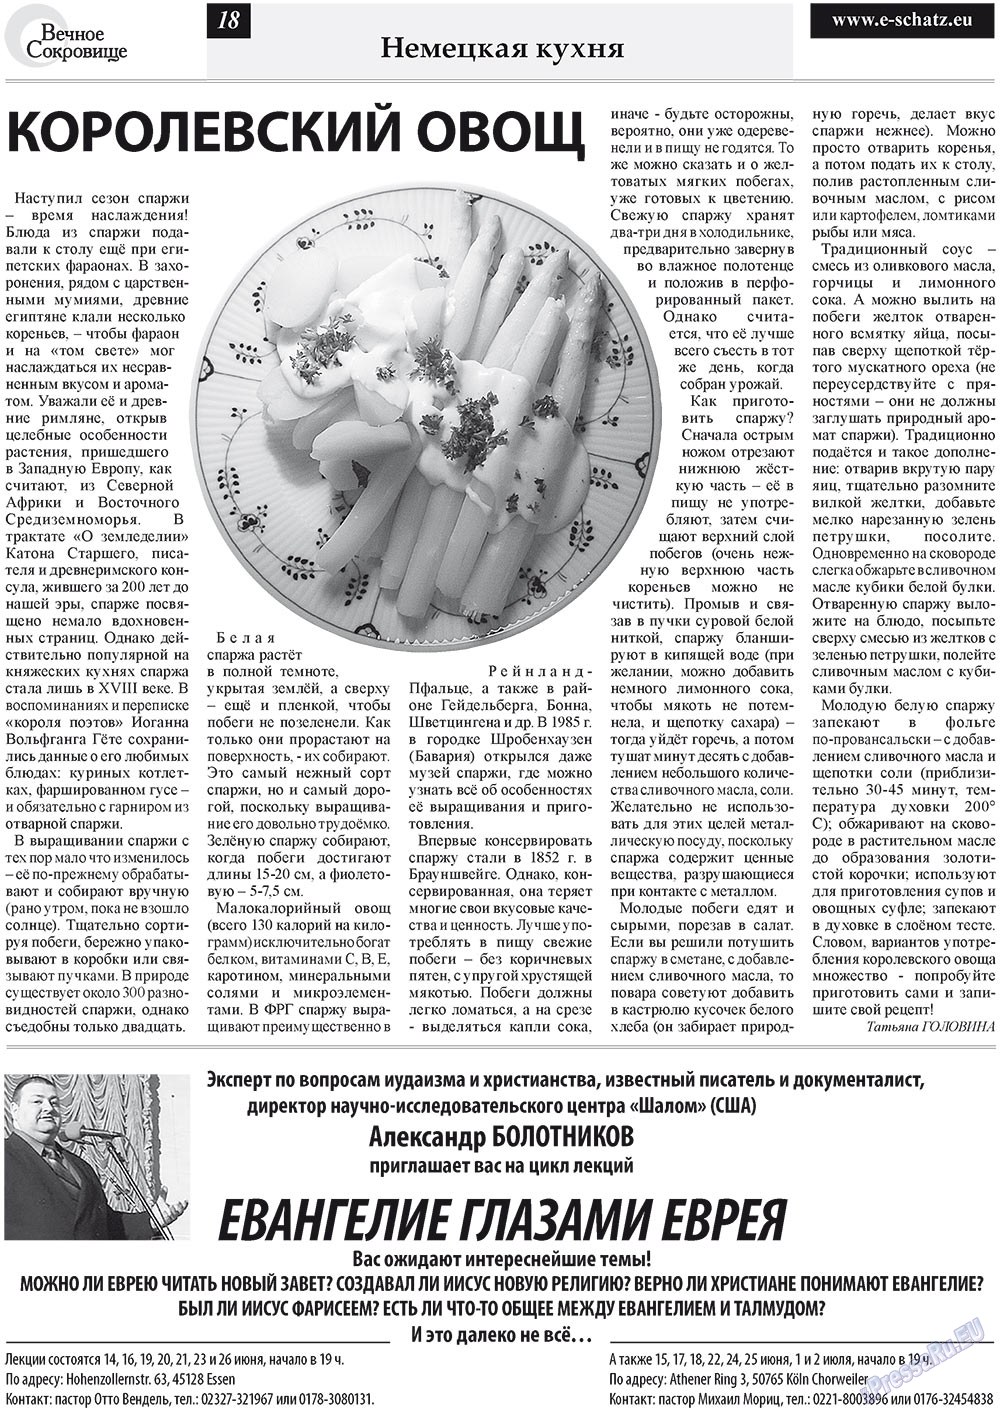 Вечное сокровище, газета. 2011 №3 стр.18